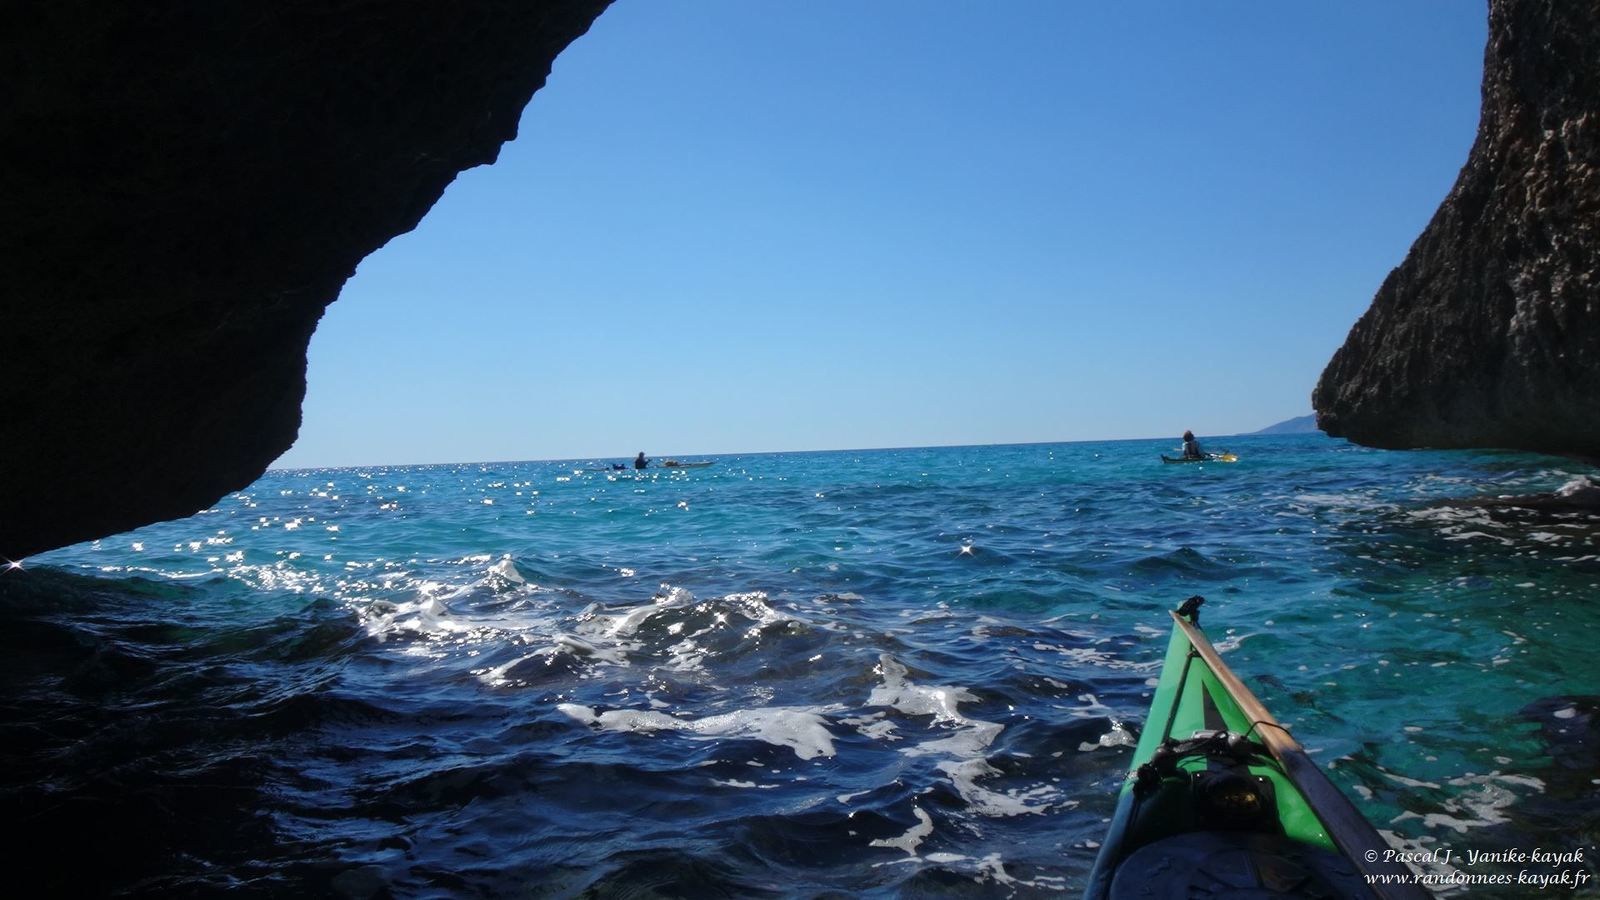 Sardegna 2019, una nuova avventura - chapitre 1: à la découverte des merveilles du Golfe d'Orosei